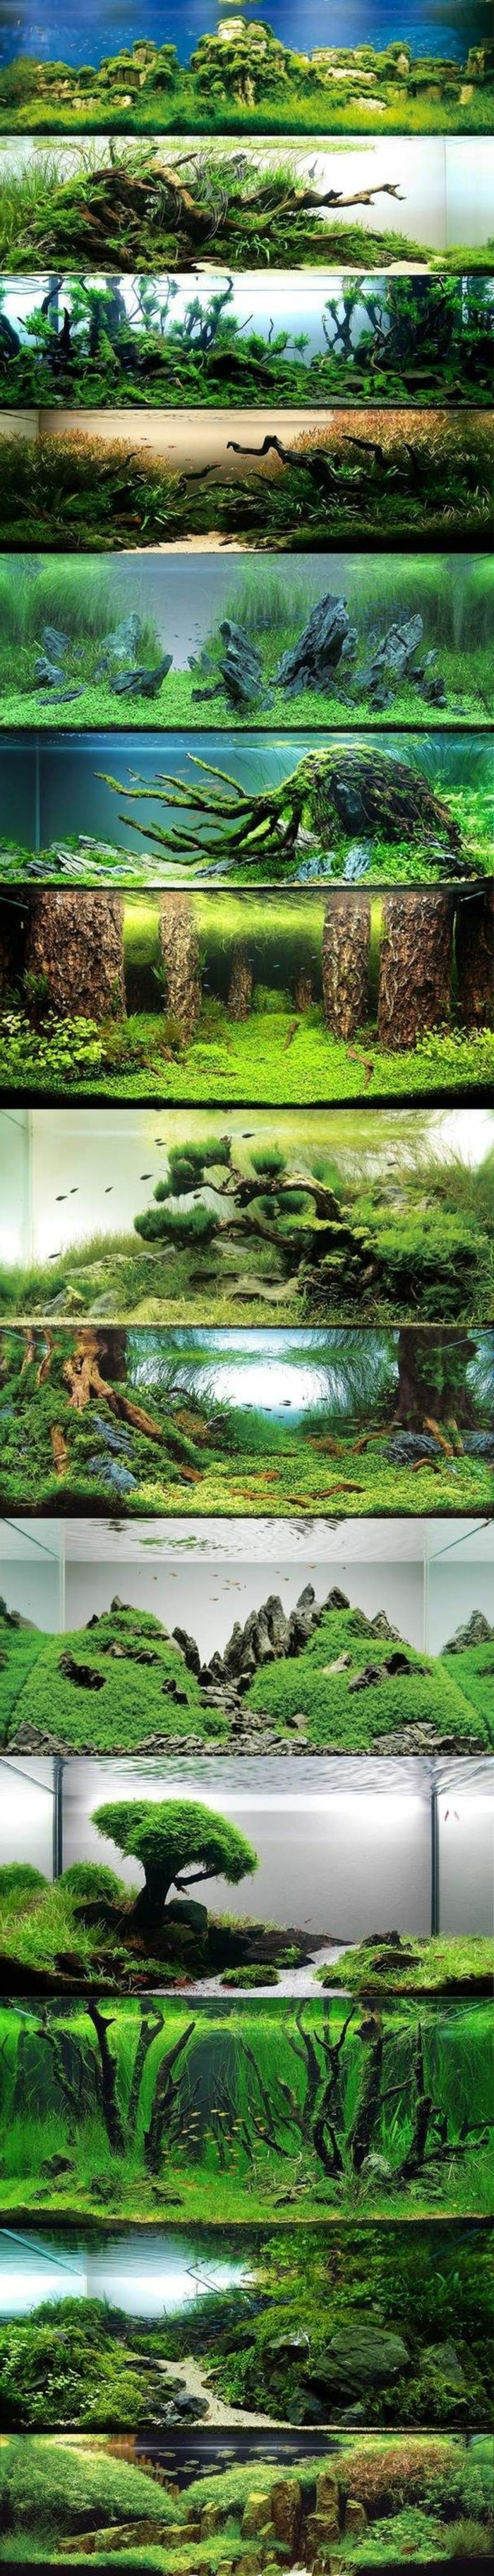 acuario-design-mejores-ideas-collage-el-mundo-con-agua-algas